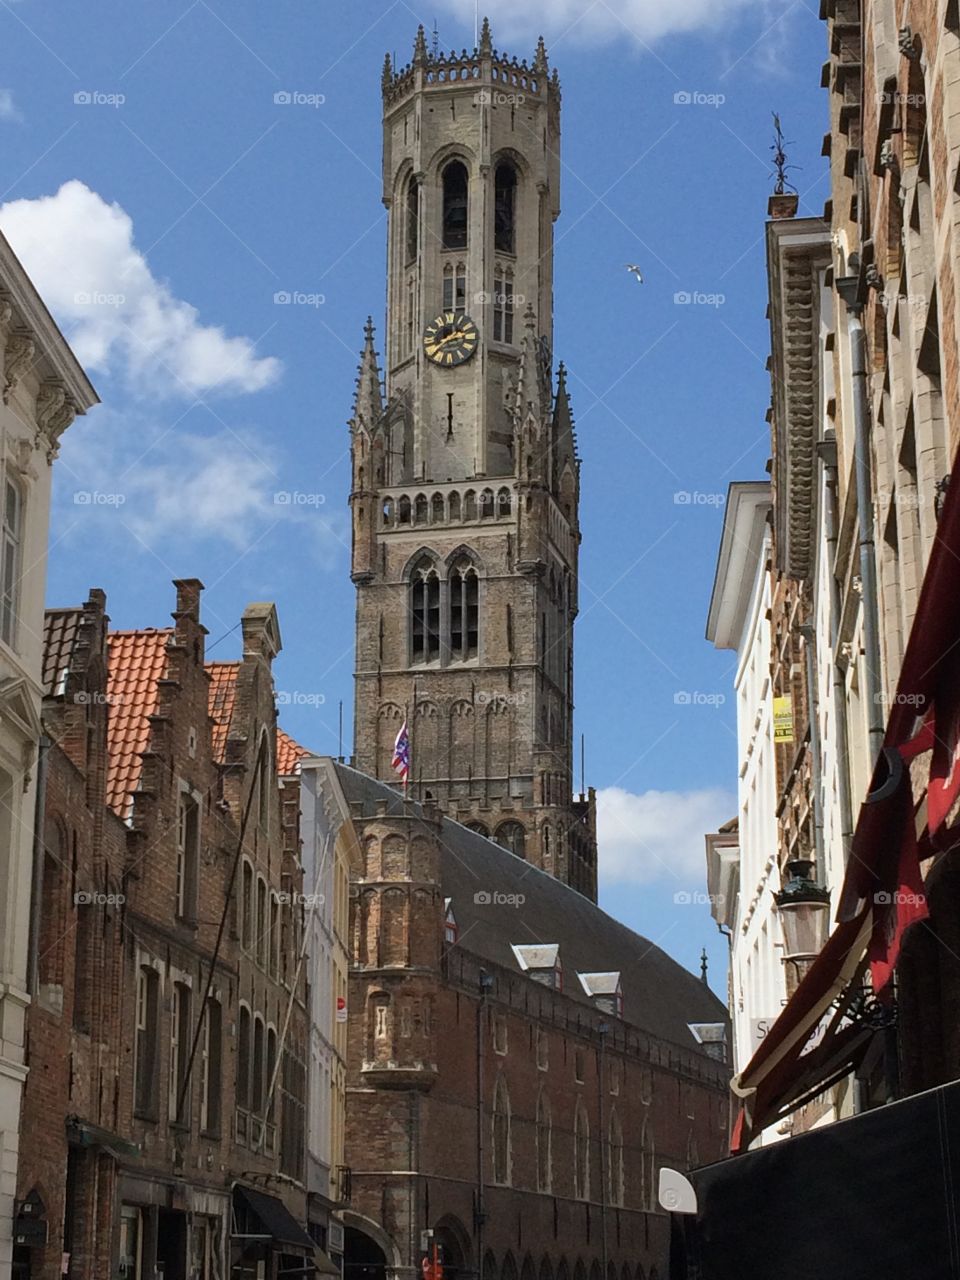 Bruges tower